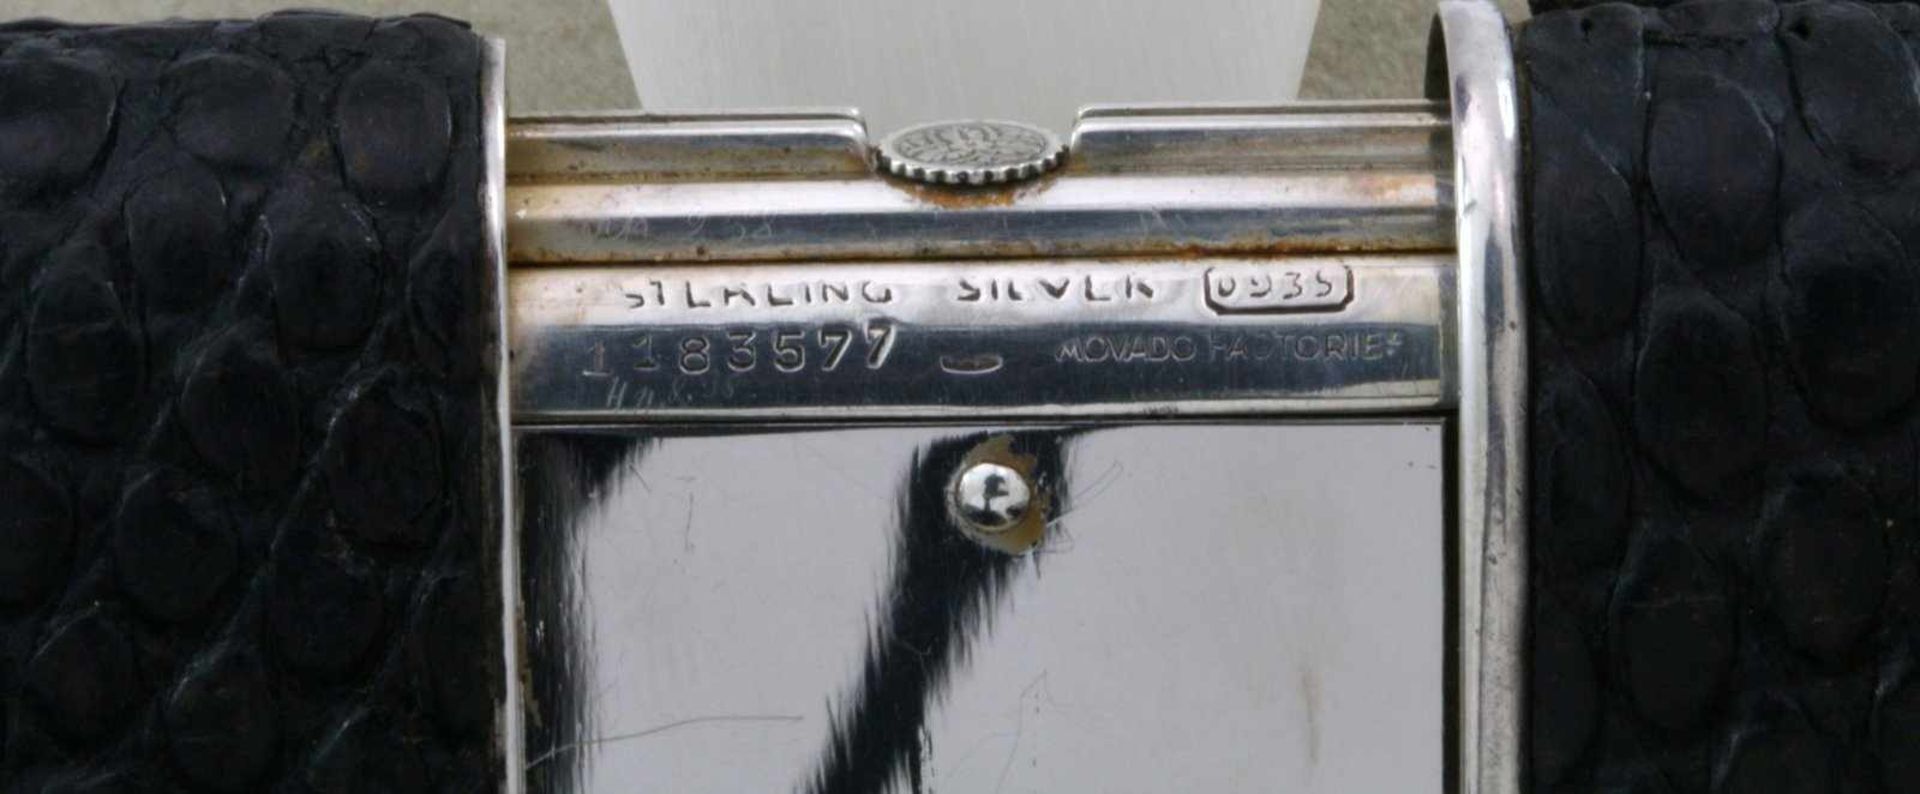 Movado Ermeto Chronometer Reiseuhr um 1940 Schweizer Handaufzugswerk, Gehäuse 925 Sterlingsilber, - Bild 5 aus 6